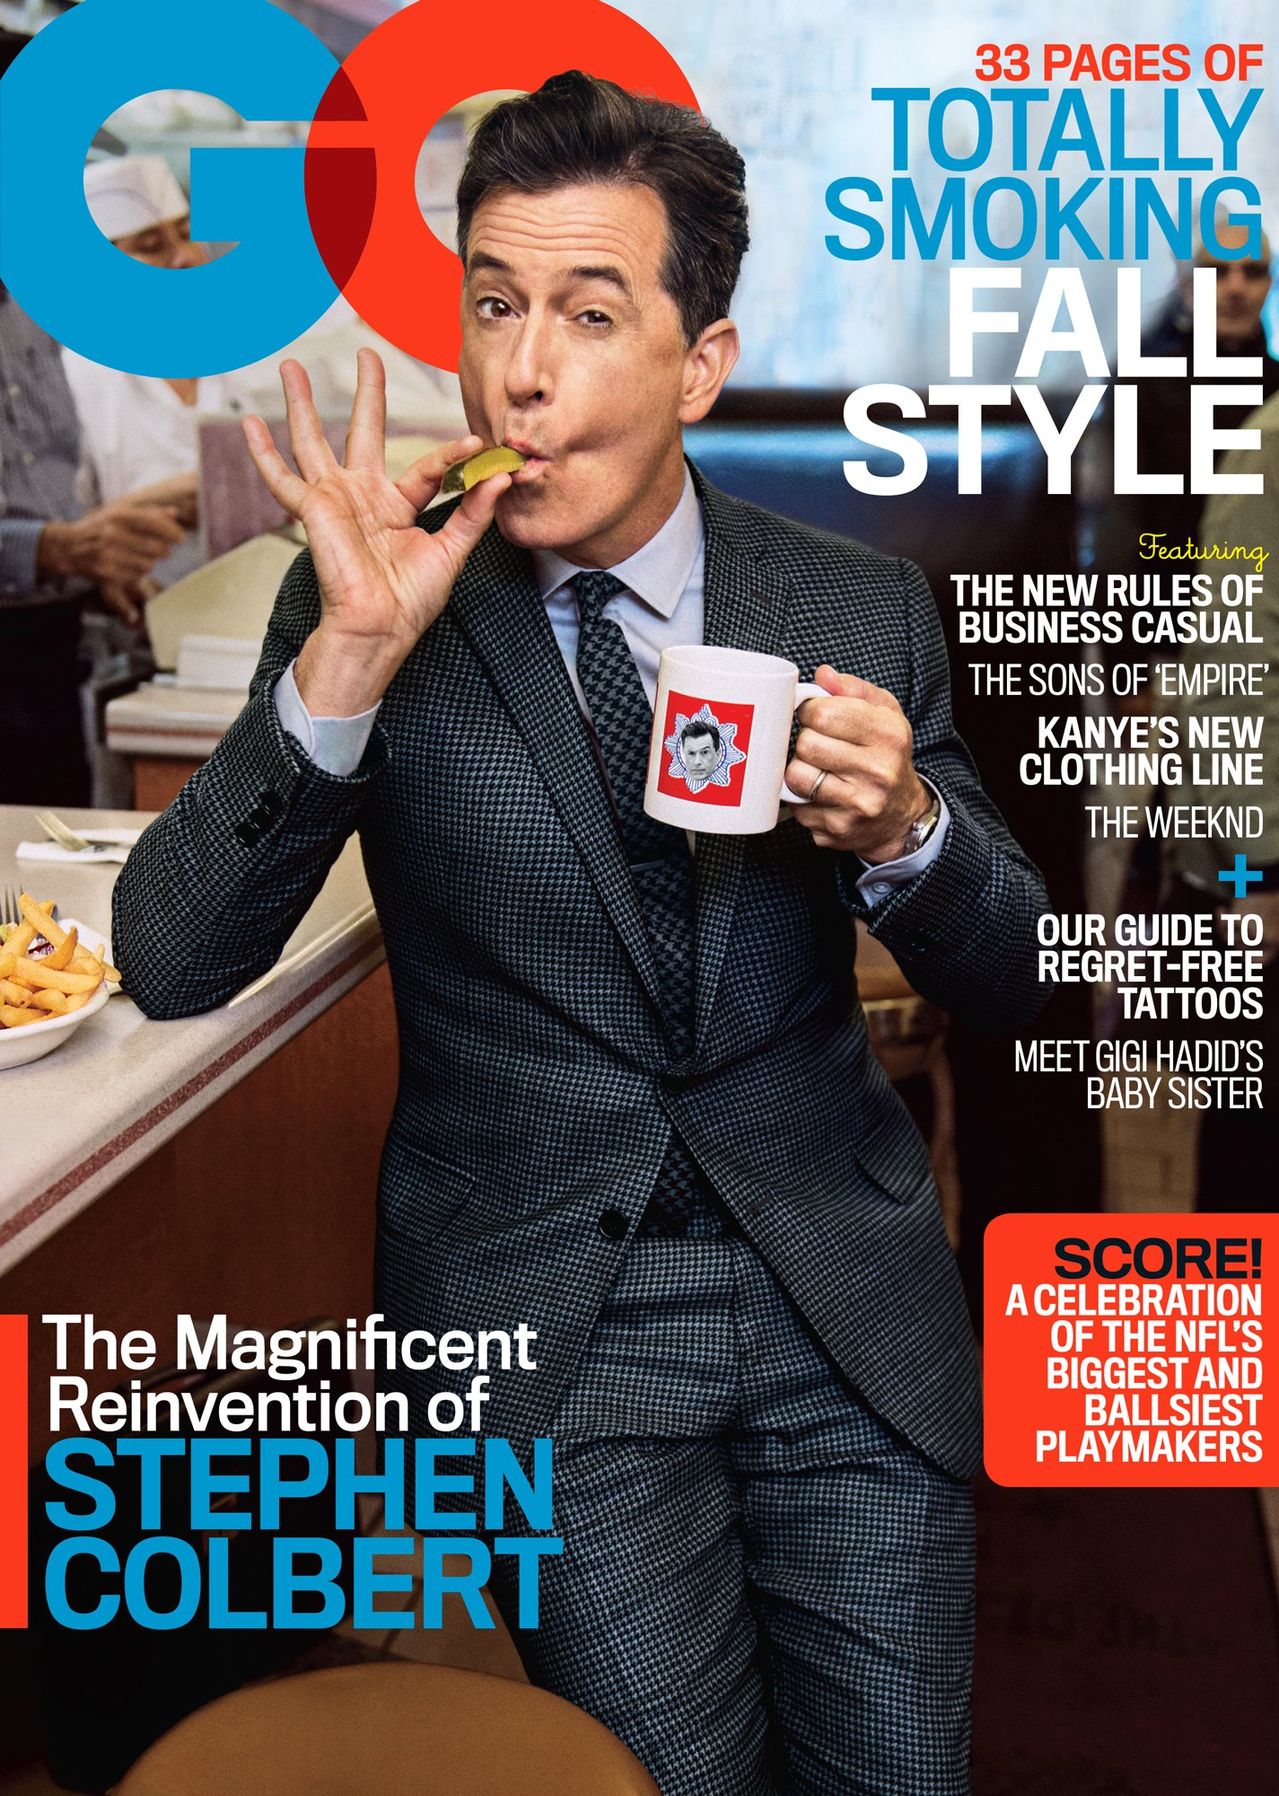 Stephen Colbert GQ September 2015 Cover Photo Shoot 001